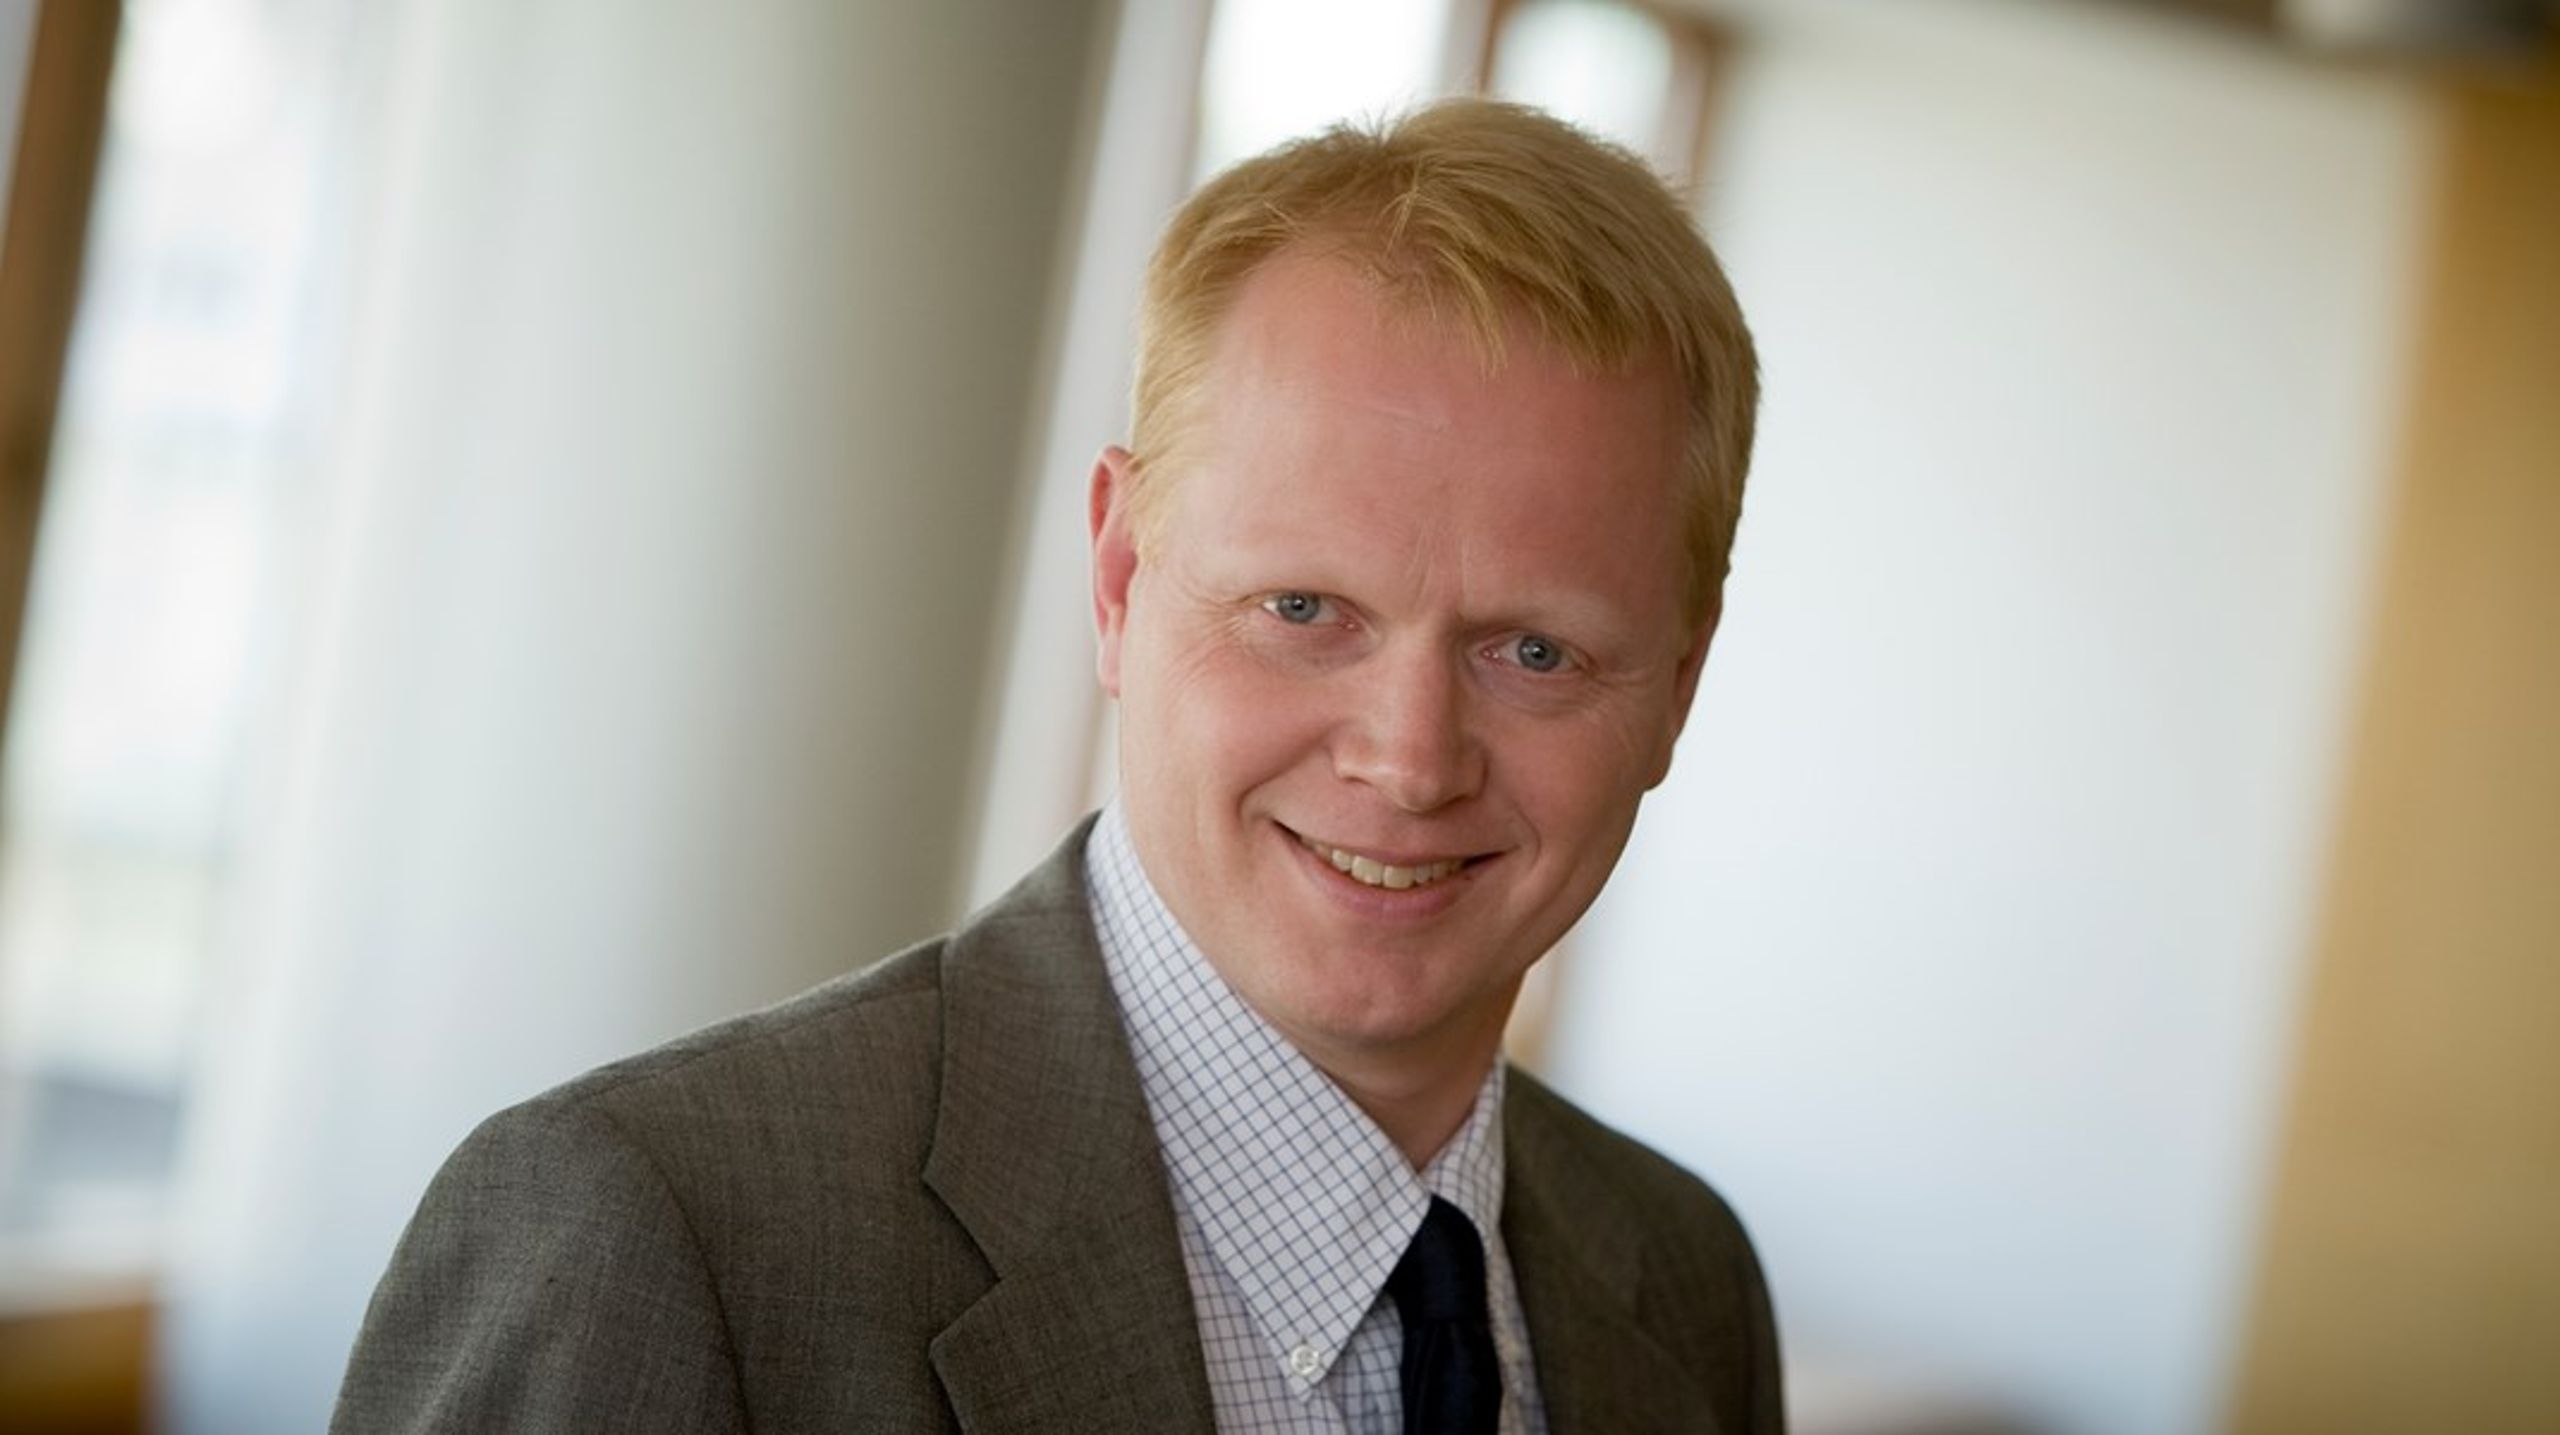 Den nye formand, Anders Stouge, er tidligere viceadministrerende direktør i Lars Aagaards gamle arbejdsplads, Green Power Denmark.